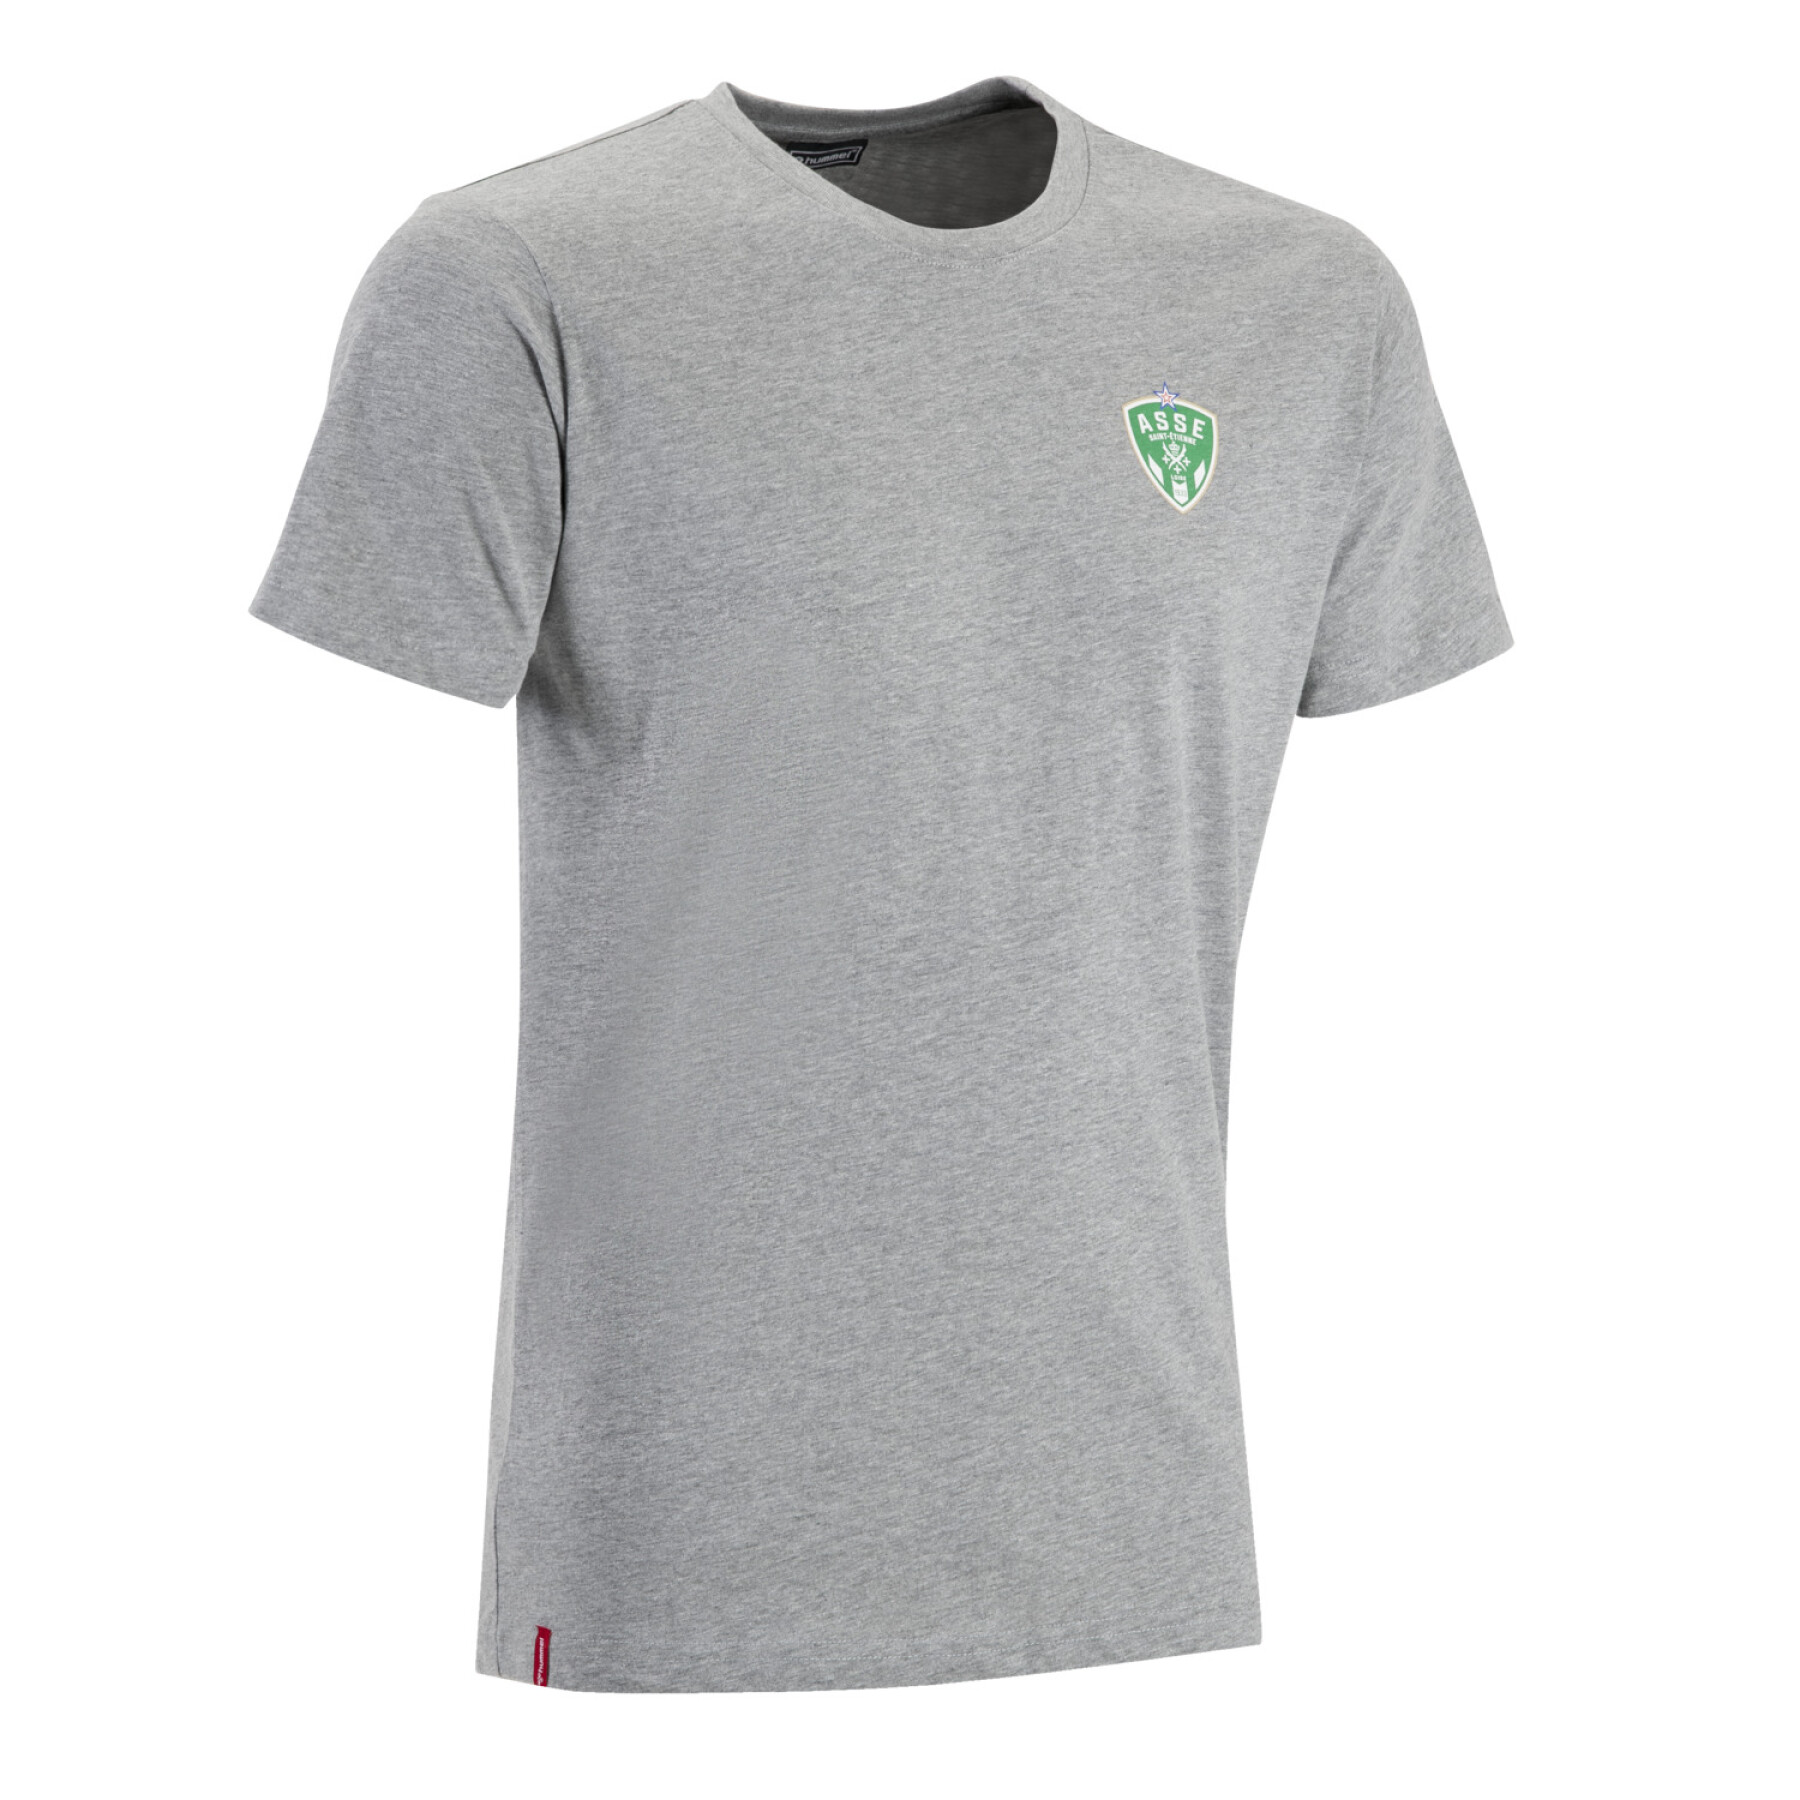 T-shirt asse 2022/23 fan groen